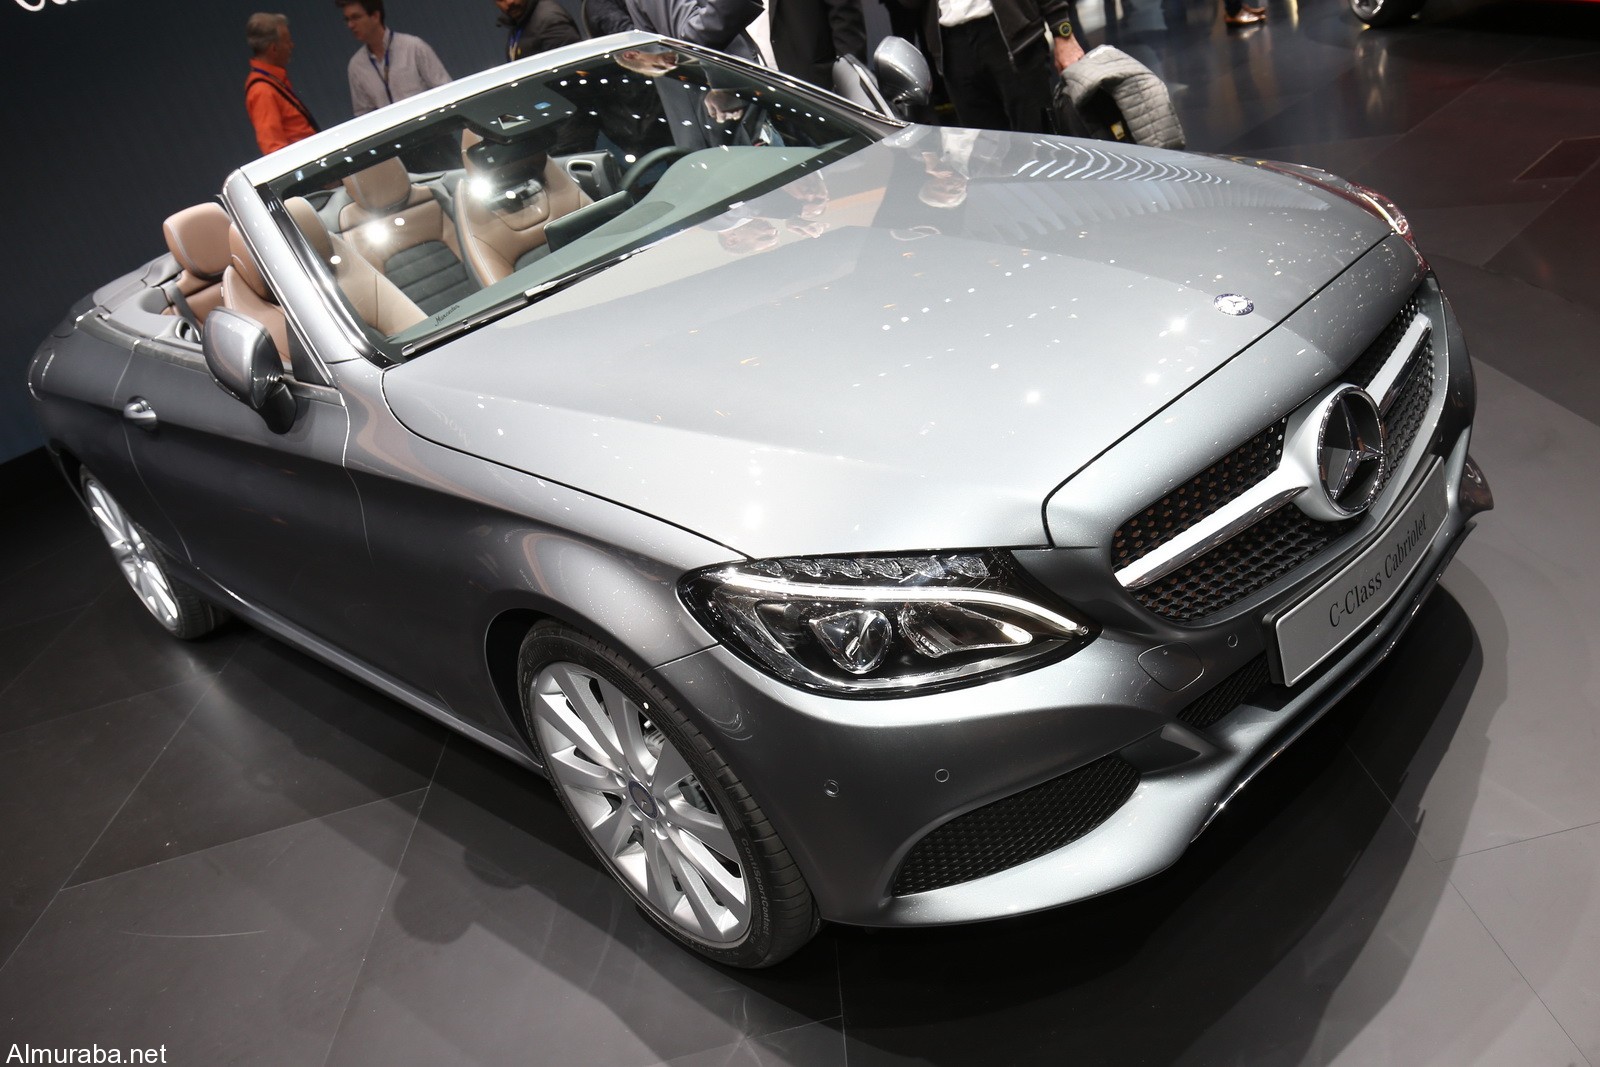 "مرسيدس بنز" تضيف سيارة جديدة لعائلة C-Class وتطلقها بمعرض سيارات جنيف Mercedes 2017 9